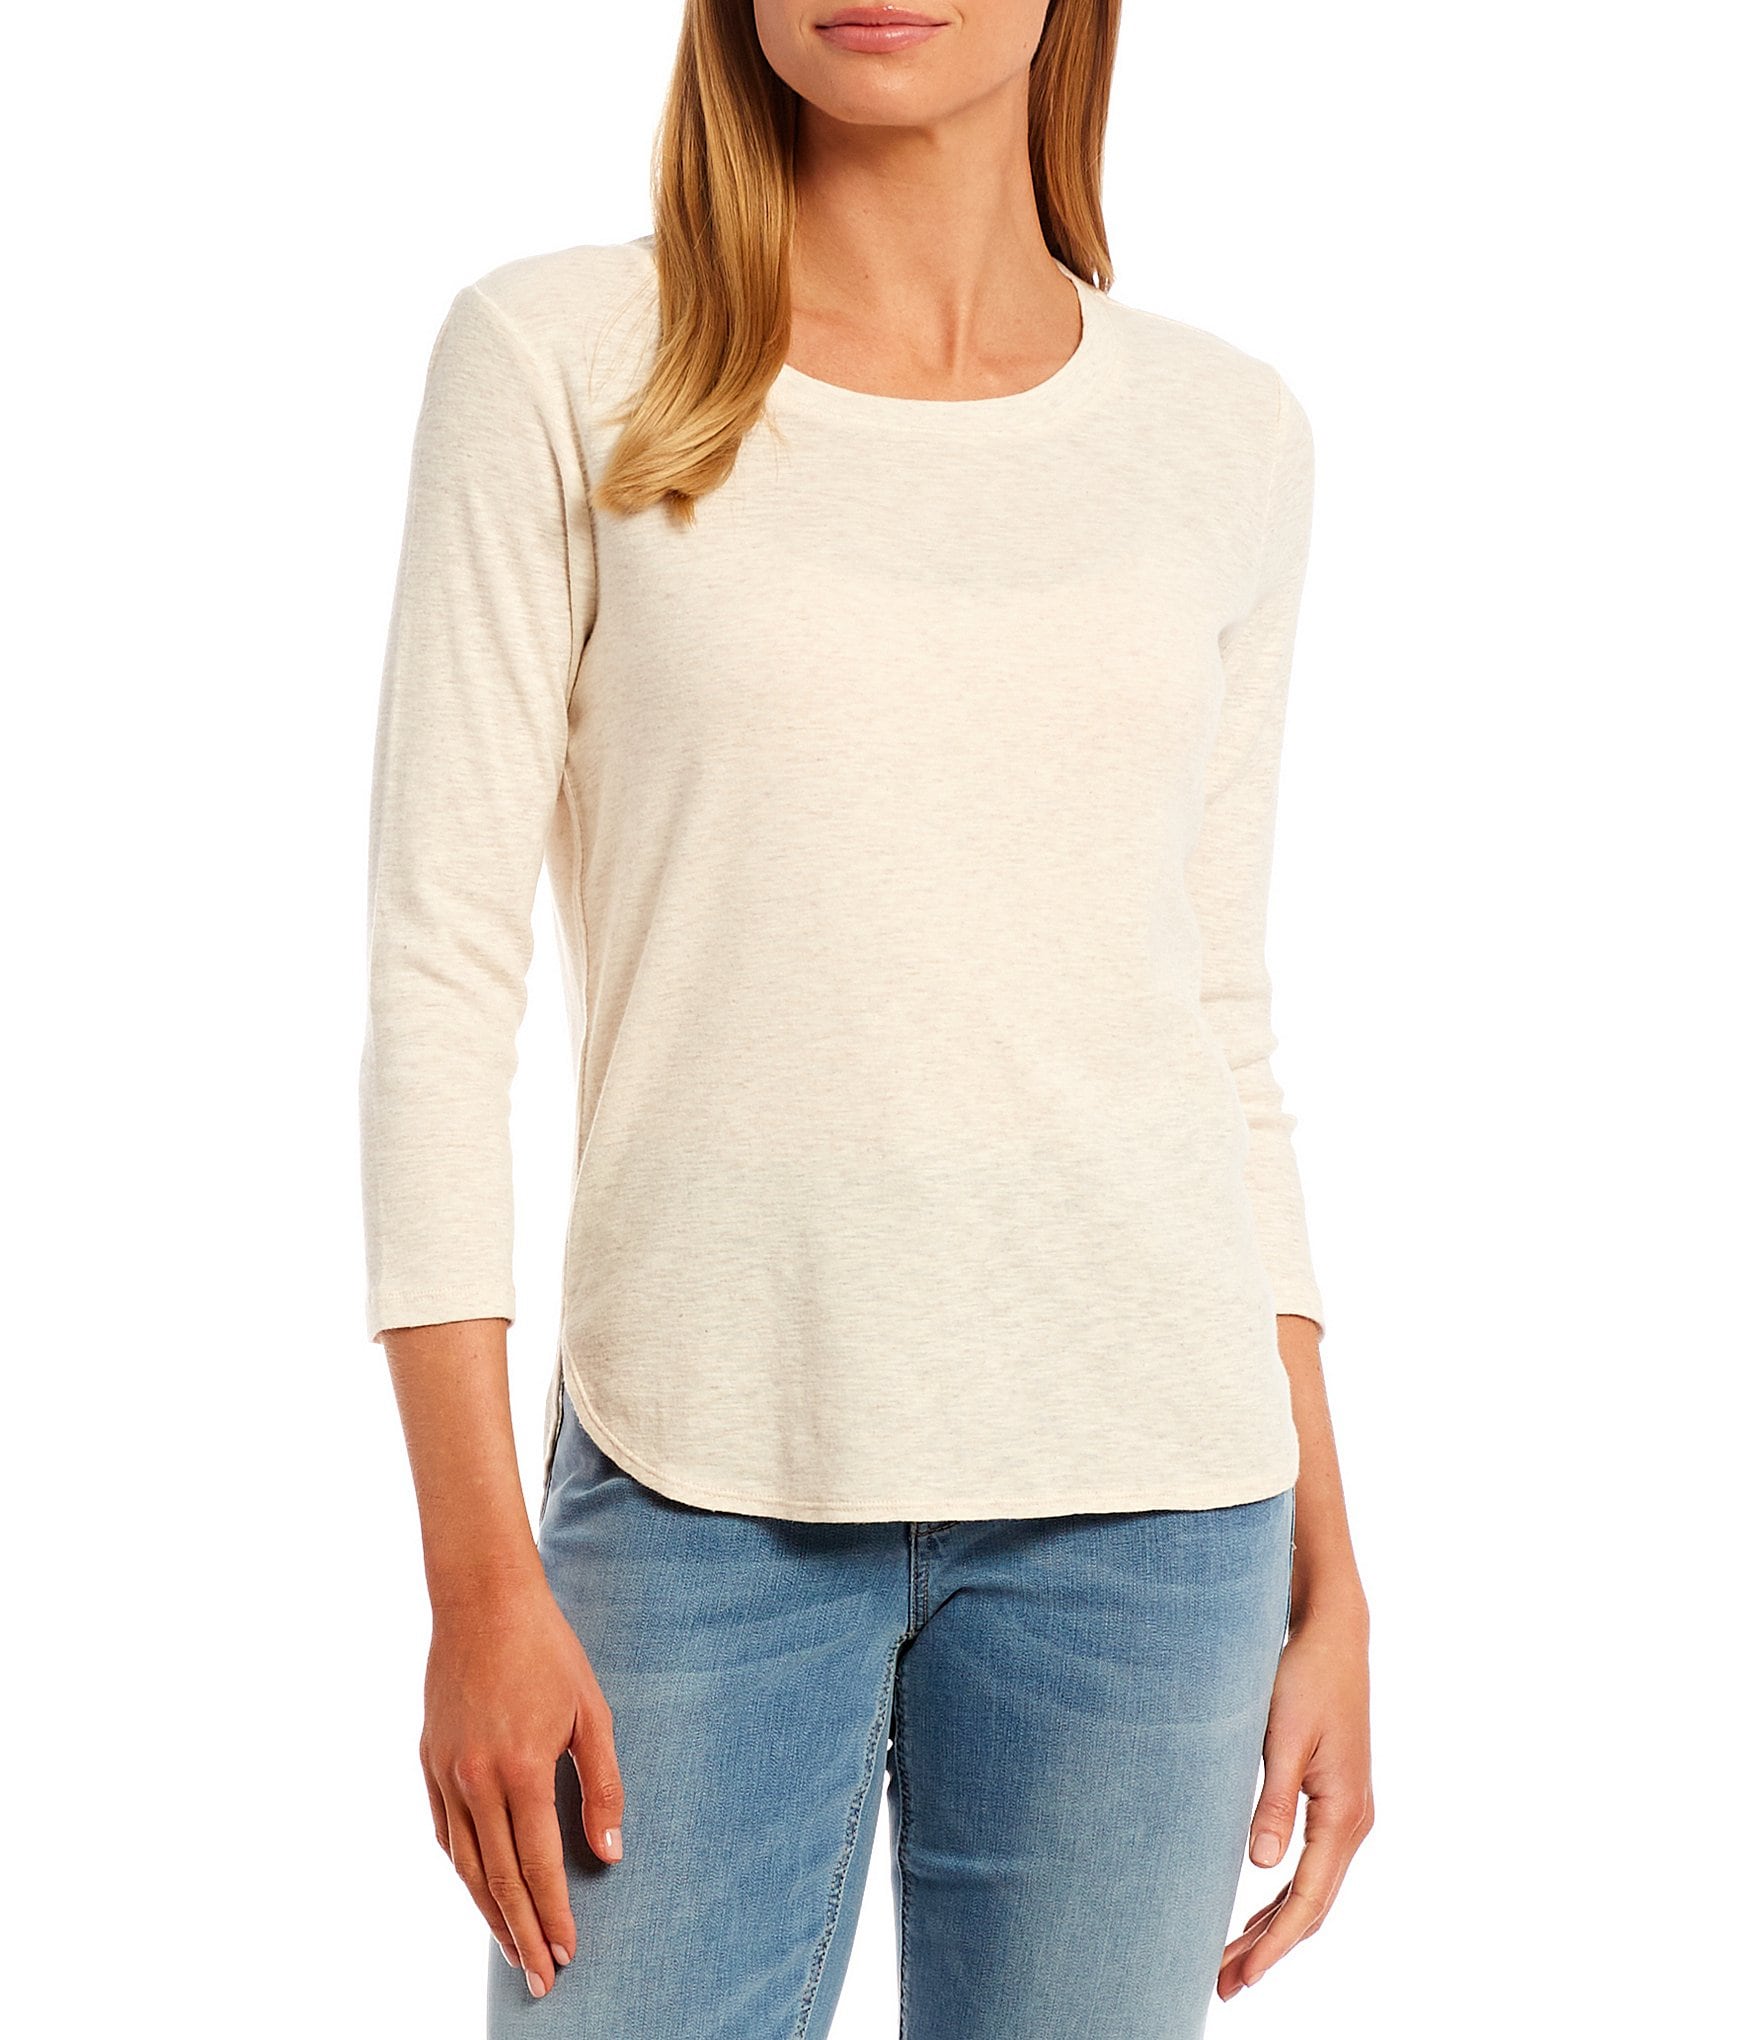 CREW/ROUND NECK Short Sleeve Women/Junior Solid Top Cotton T Shirt S-XL